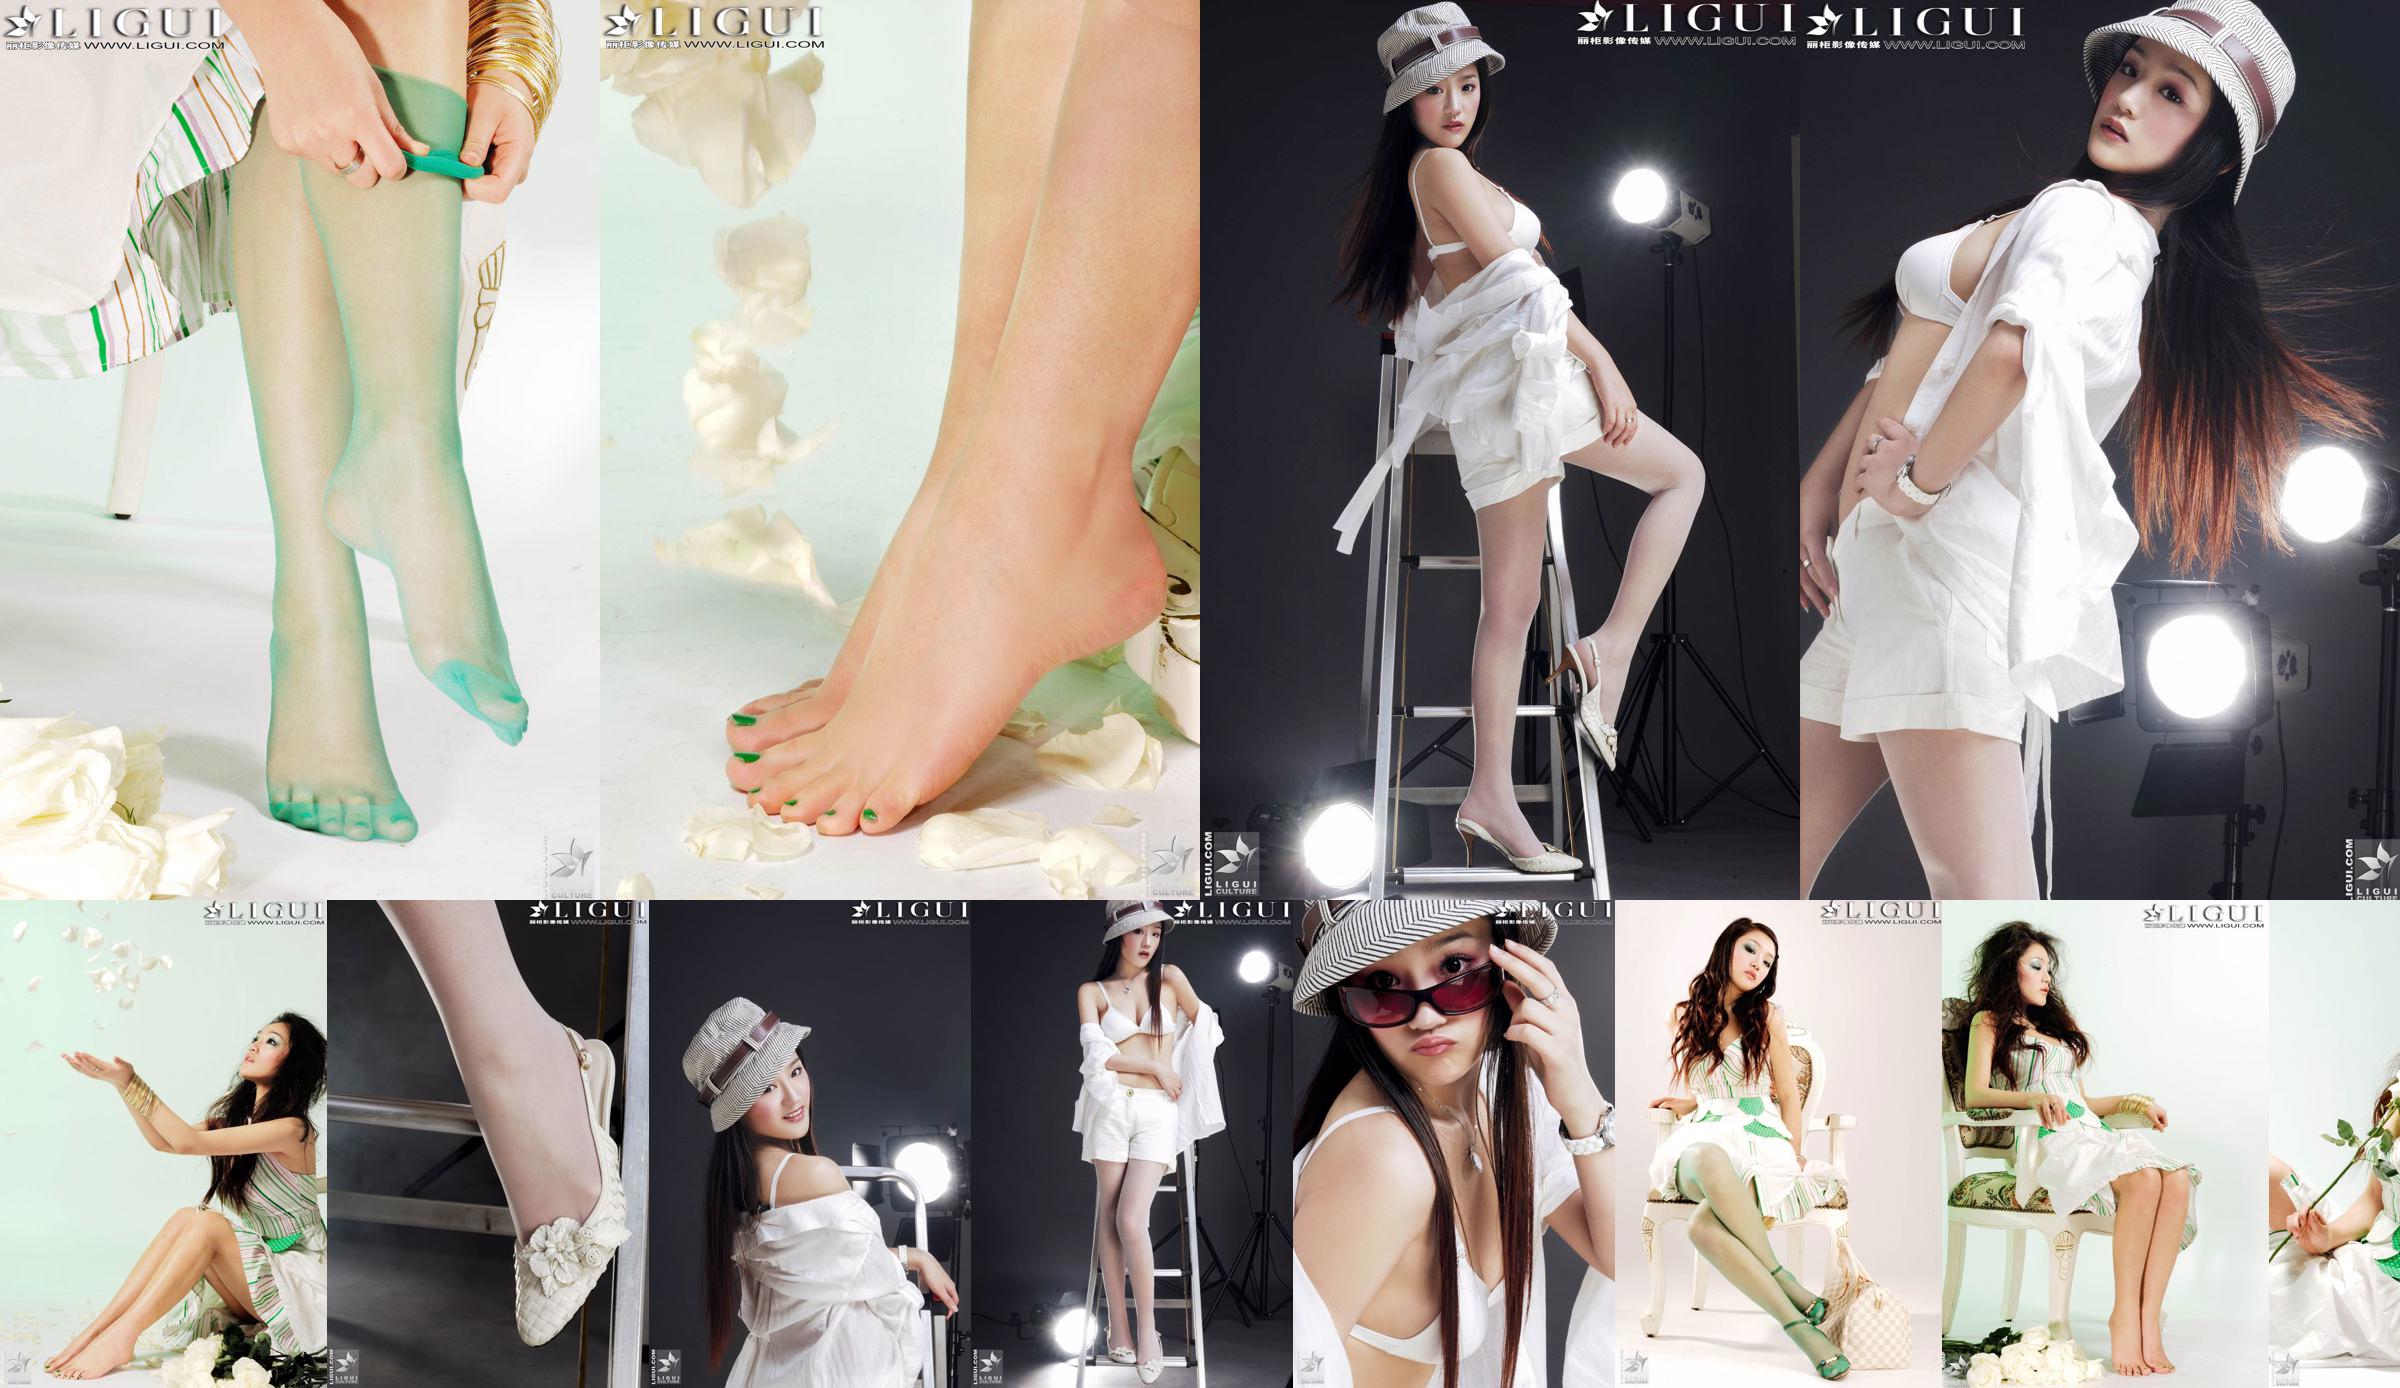 [丽 柜 贵 foot LiGui] Foto "Fashionable Foot" milik Model Zhang Jingyan tentang kaki dan kaki sutra yang indah No.bc7967 Halaman 8